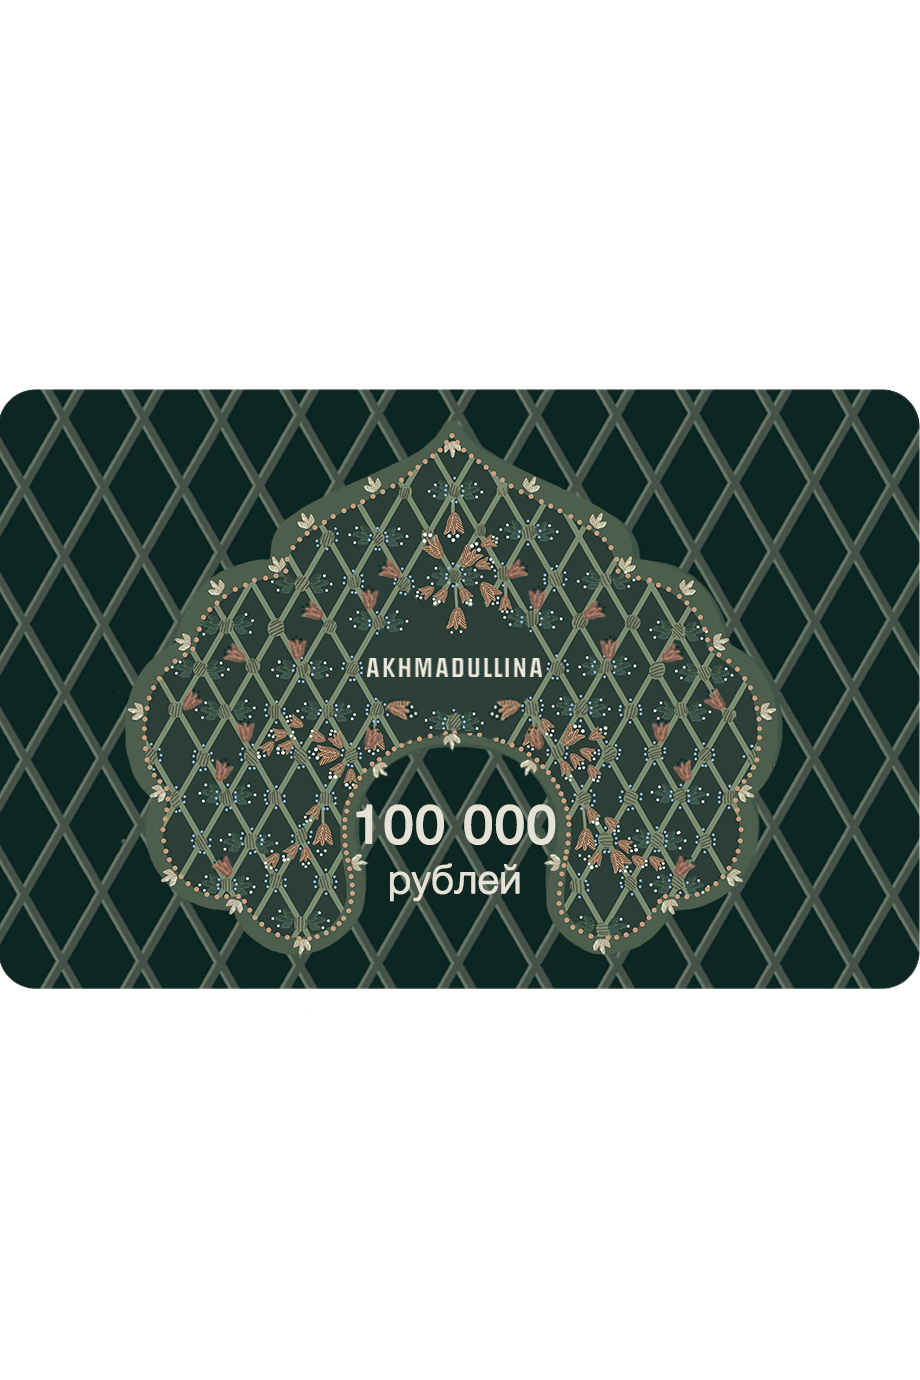 Подарочный сертификат 100 000 руб. AKHMADULLINA